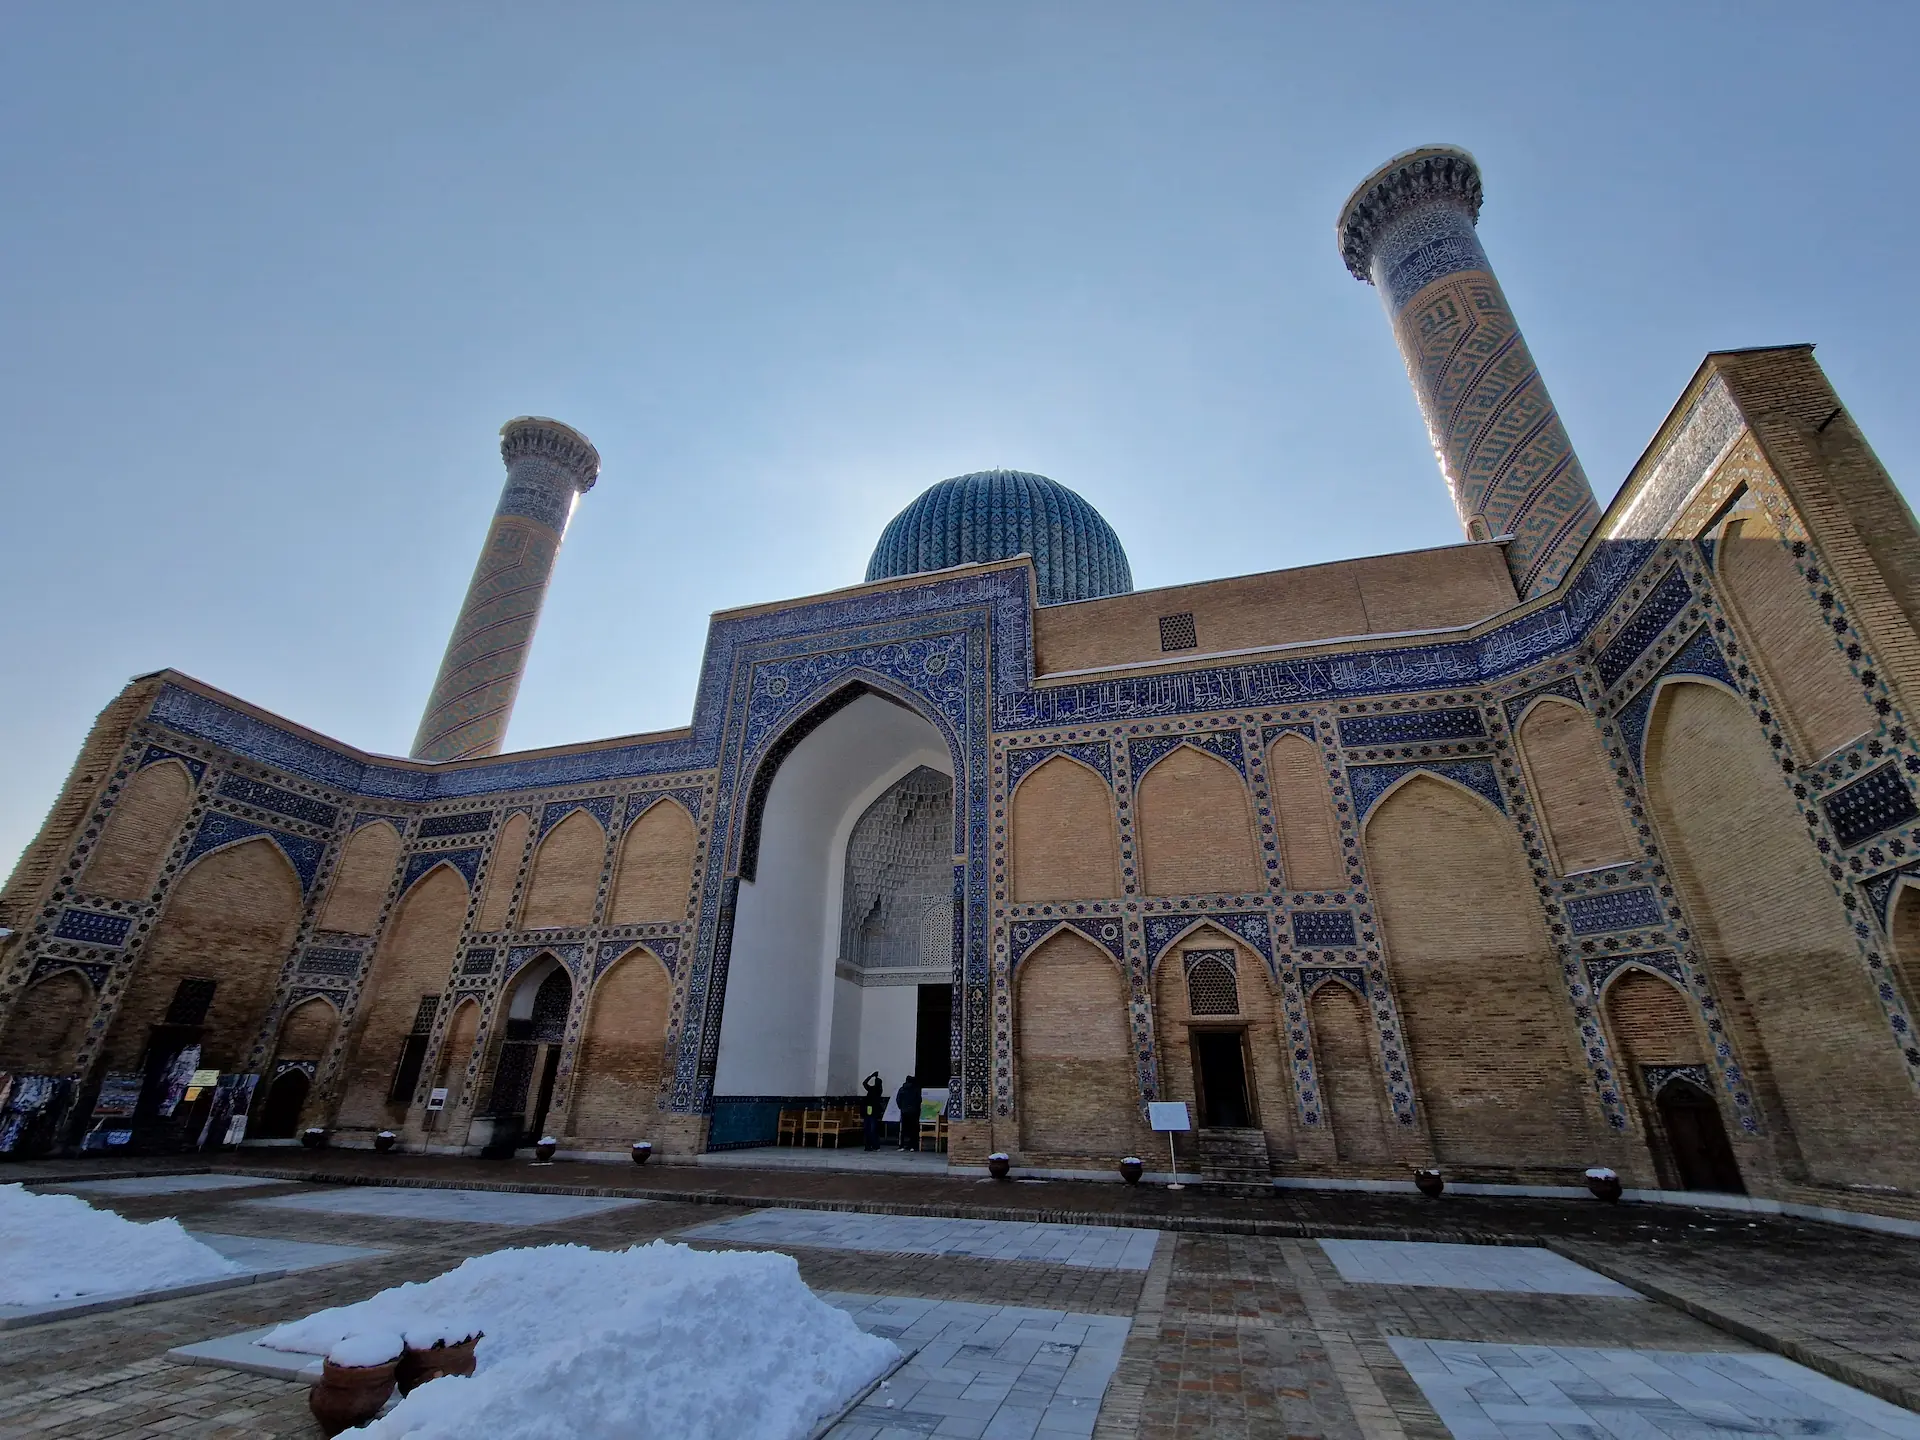 Le mausolée Gur Amir, murs en terre brune décorés de céramique bleue.